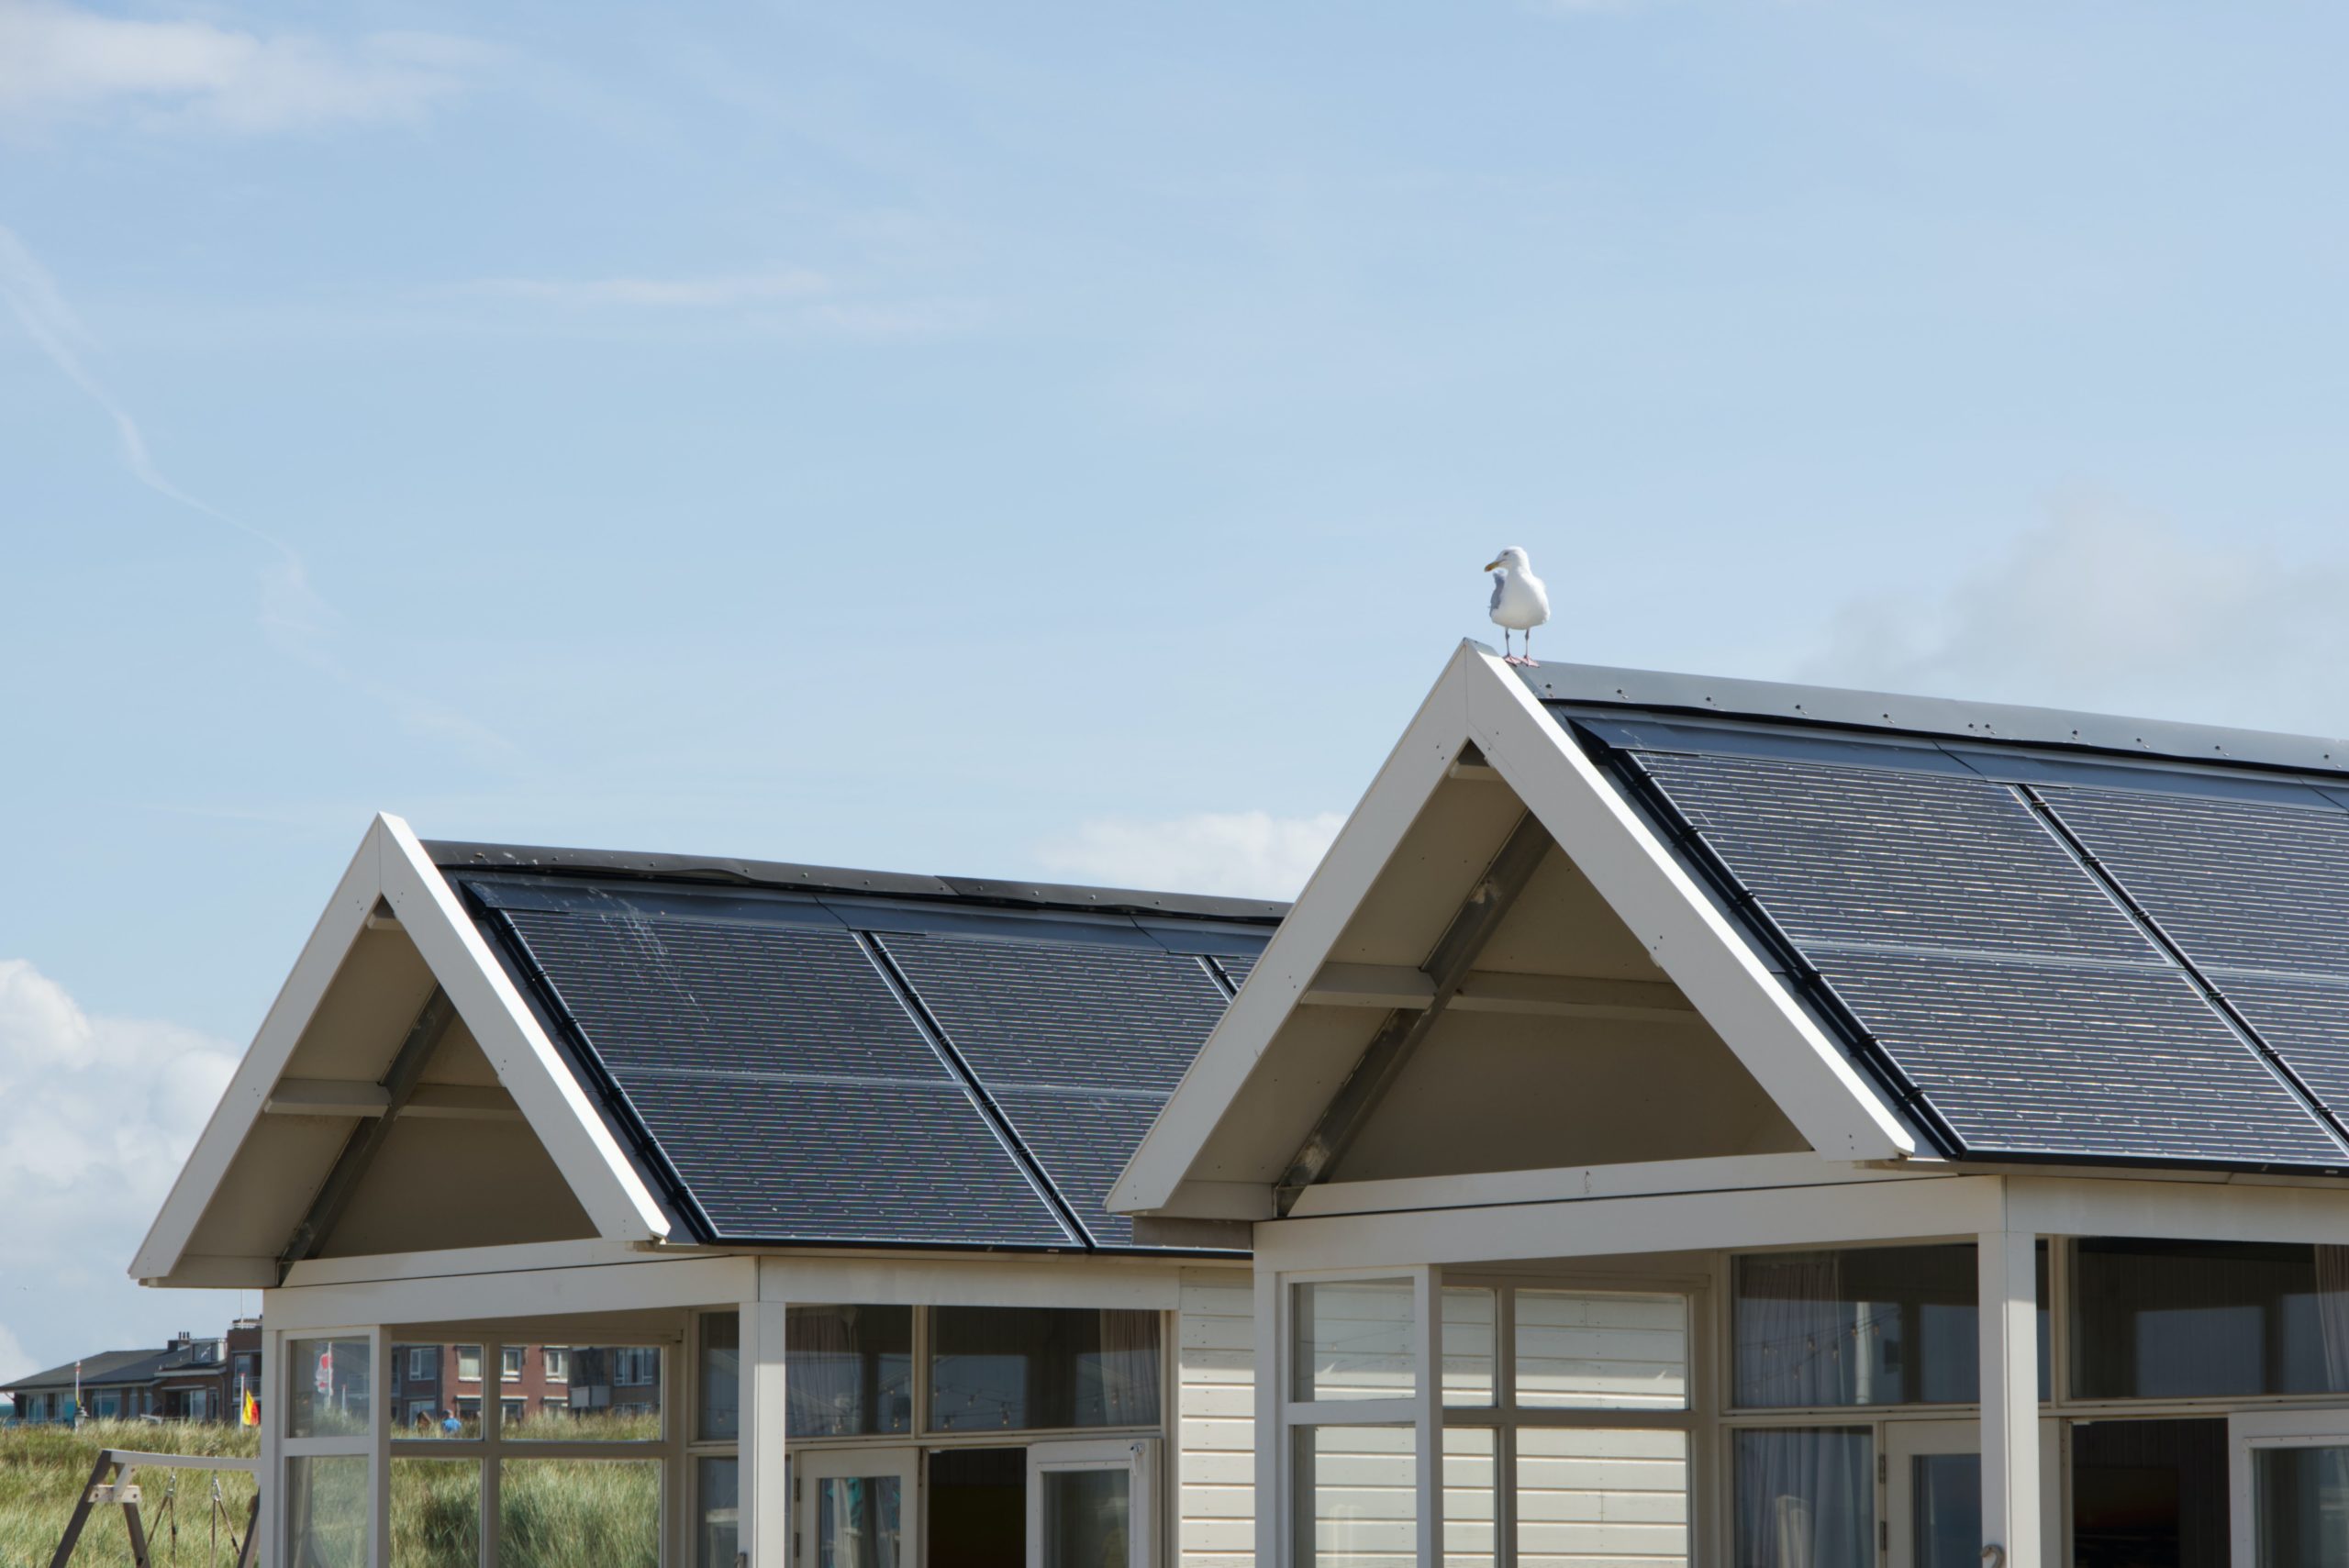 Na obrázku sa nachádza rodinný dom vybavený solárnymi panelmi.